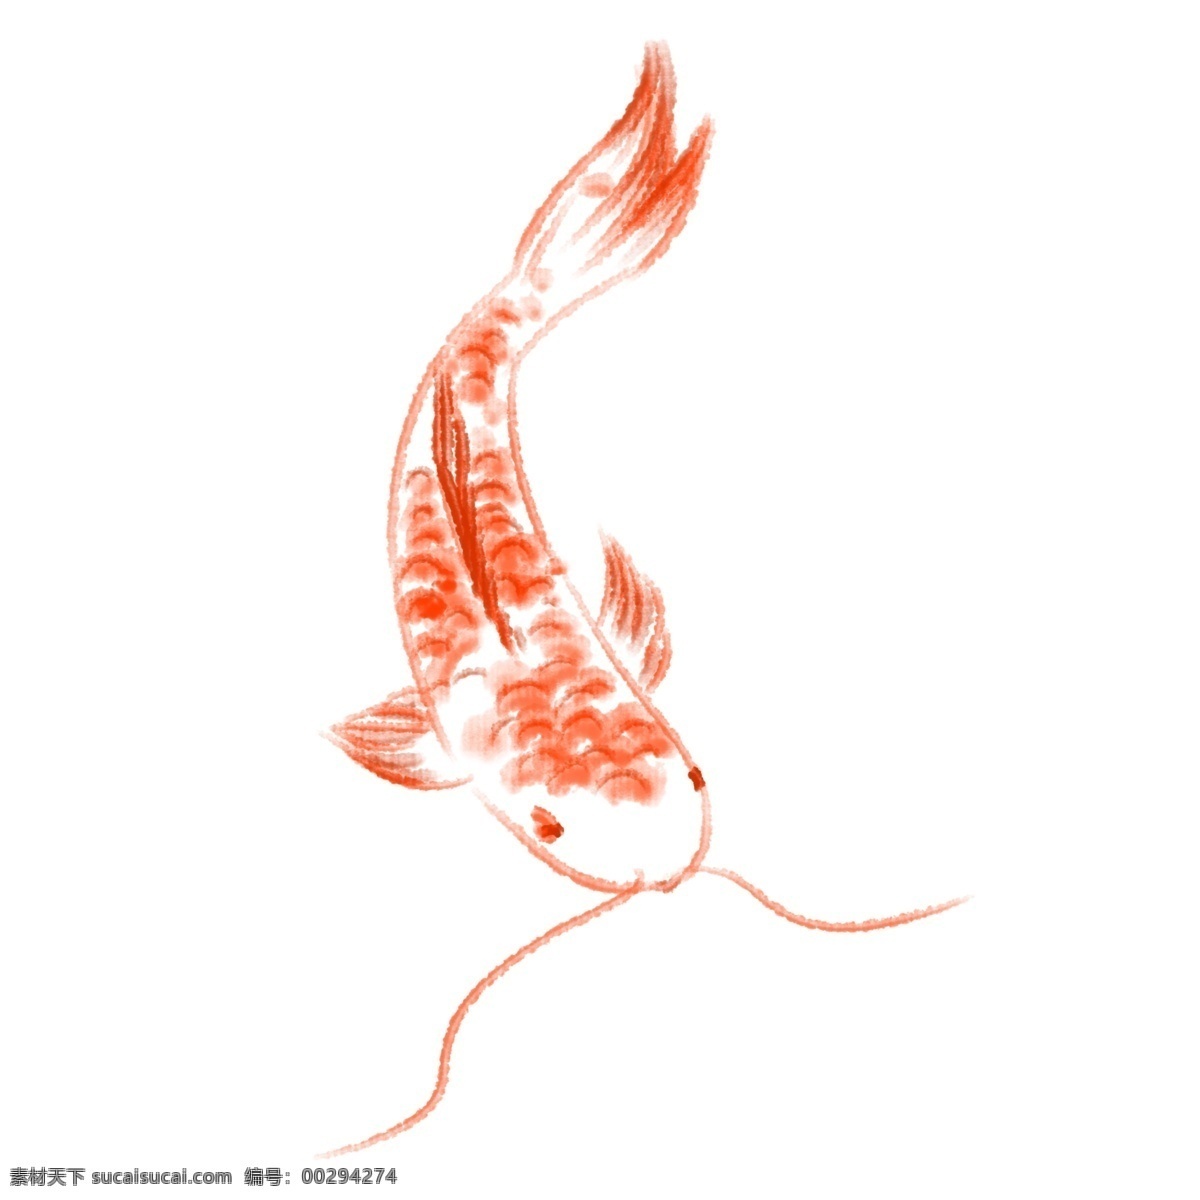 手绘 卡通 金鱼 插画 卡通金鱼 水墨画 手绘金鱼 动物 水里 水彩金鱼插画 水生动物 长胡须的金鱼 鱼